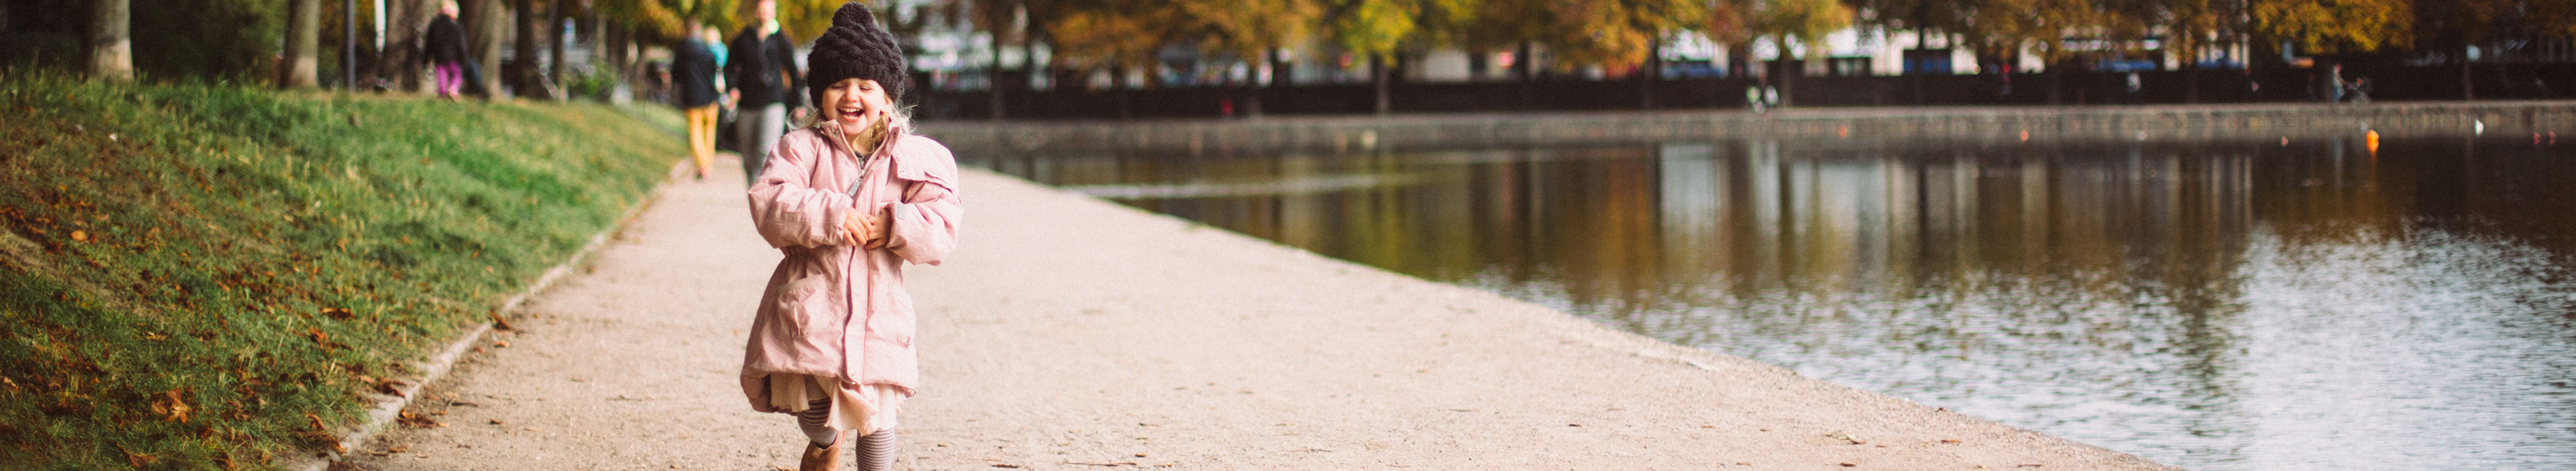 Mädchen, das an einem schönen Herbsttag am Ufer der Seen in Oesterbro Kopenhagen läuft